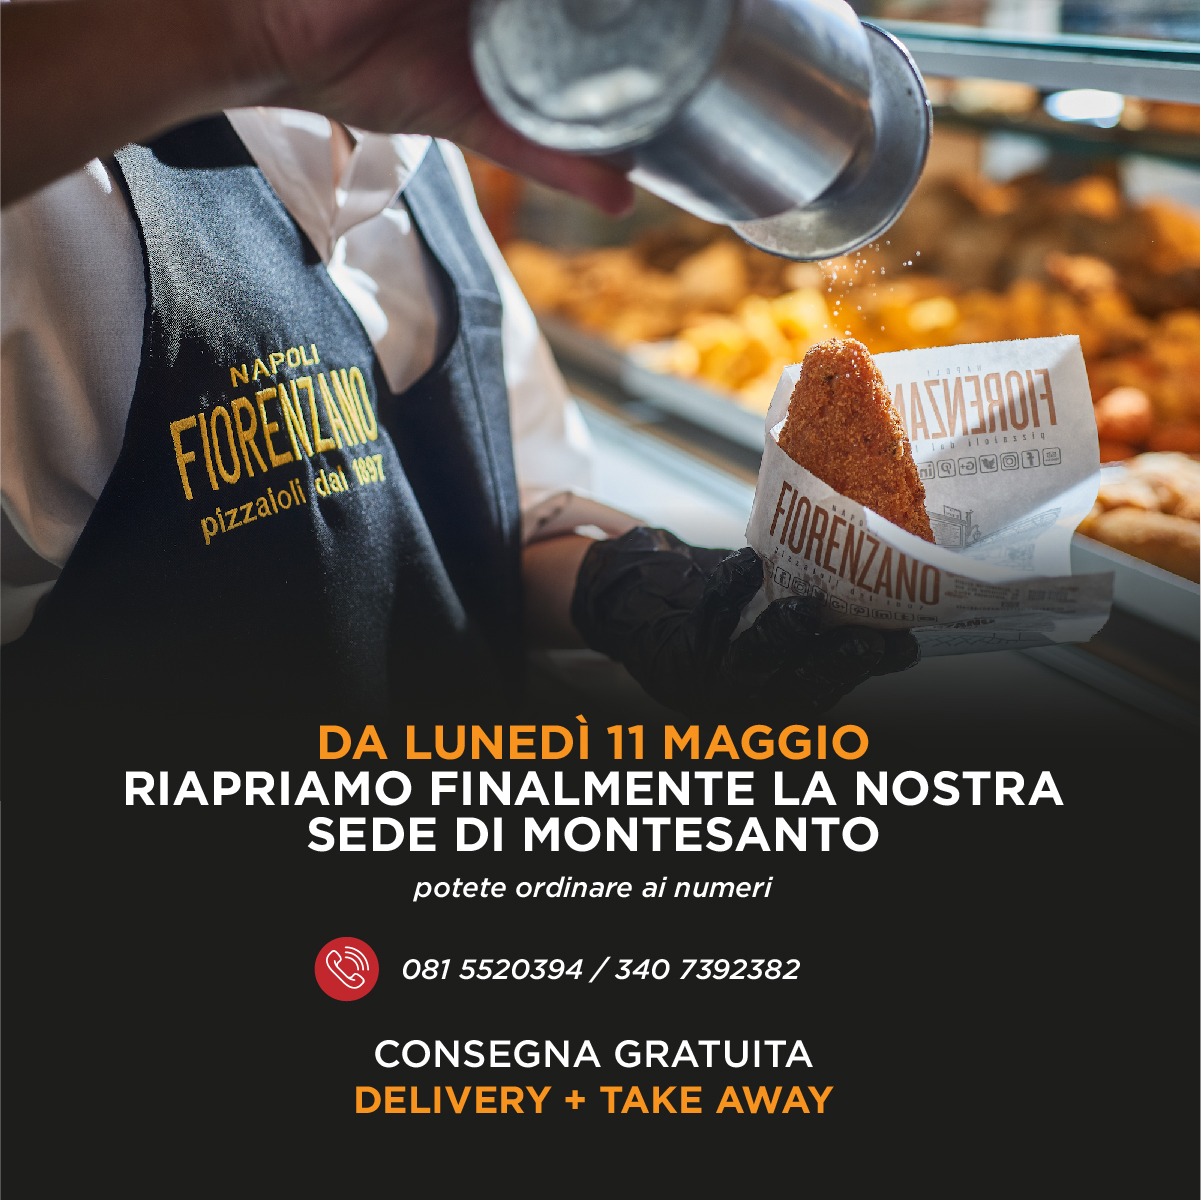 Pizzeria Fiorenzano 1897 - “Promozioni, sconti e sicurezza: così riapriamo per i nostri clienti”